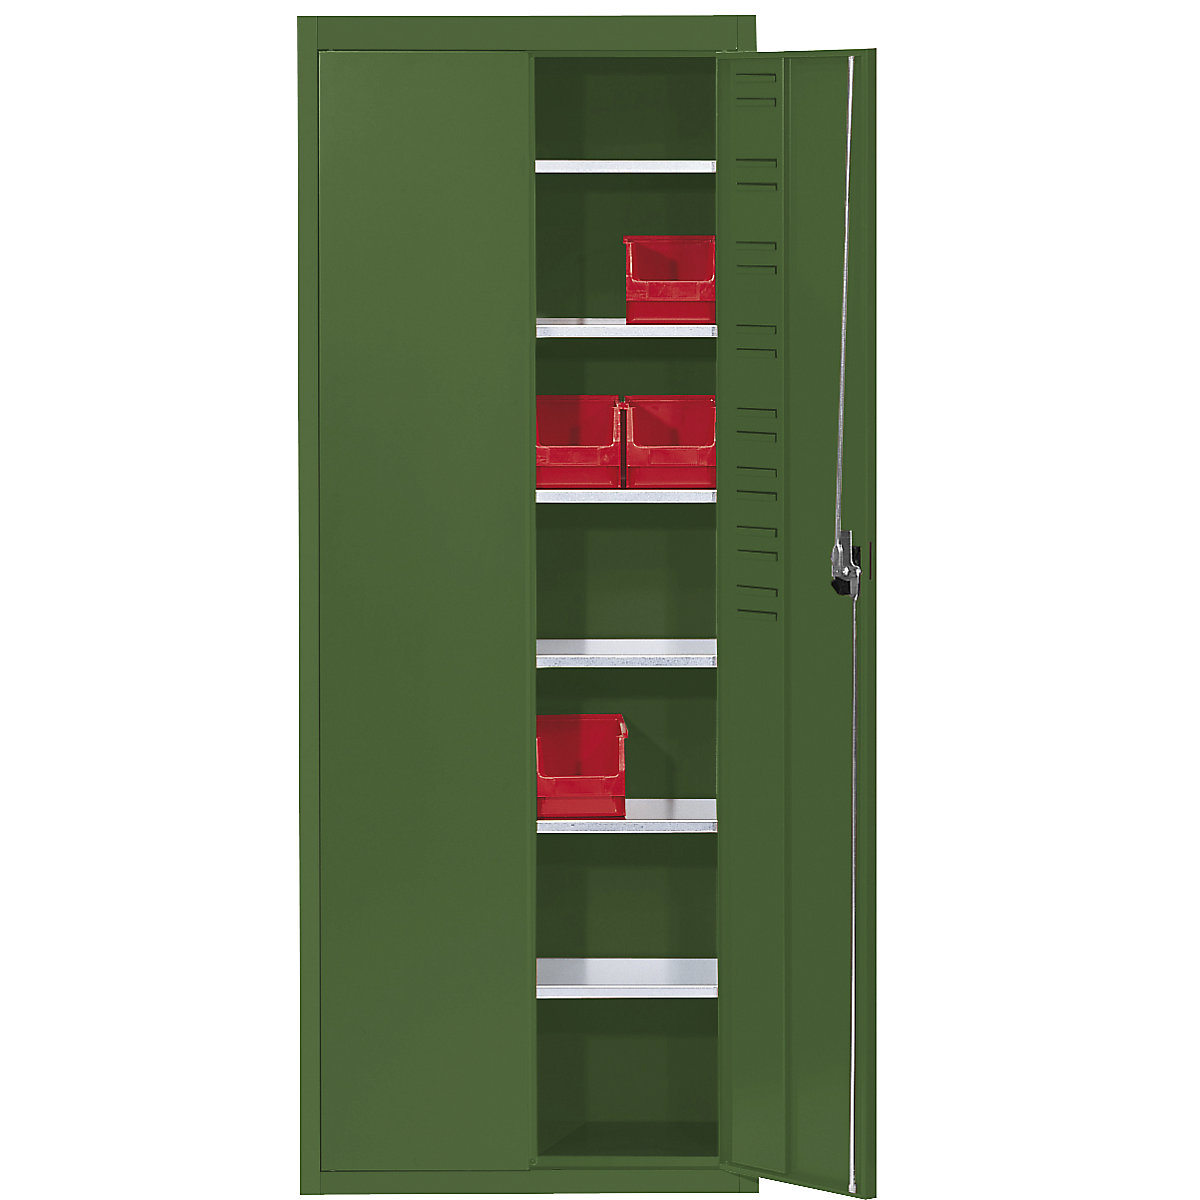 Skladiščna omara, brez odprtih skladiščnih posod – mauser, VxŠxG 1740 x 680 x 280 mm, ena barva, reseda zelene barve-8